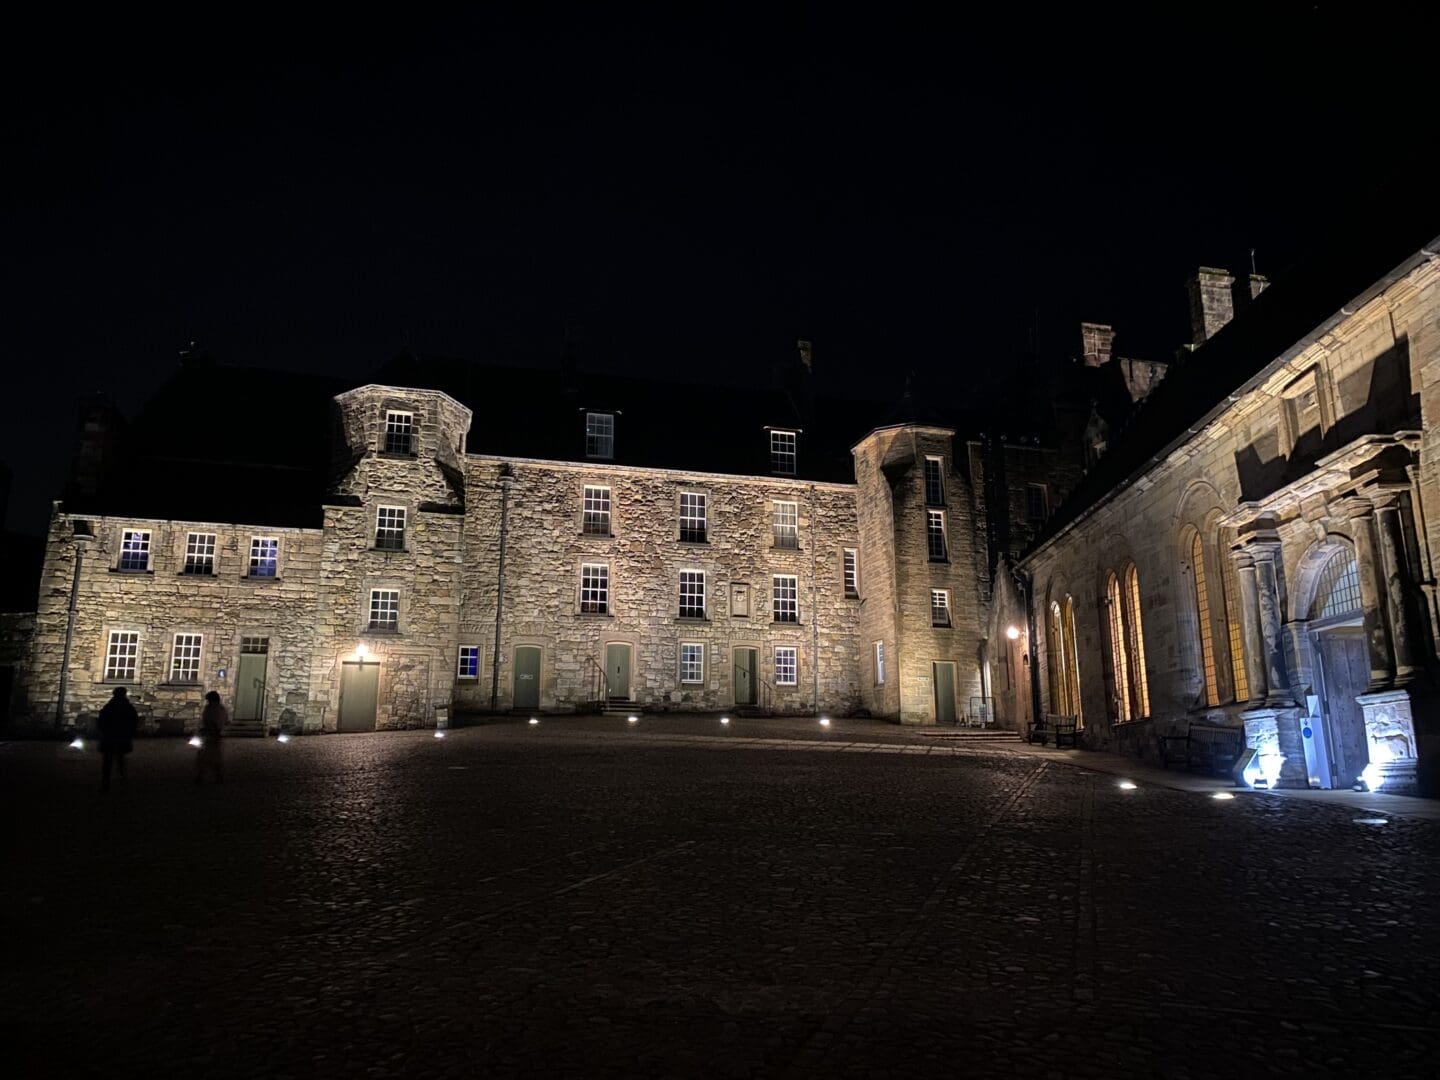 Stirling castle in the dark